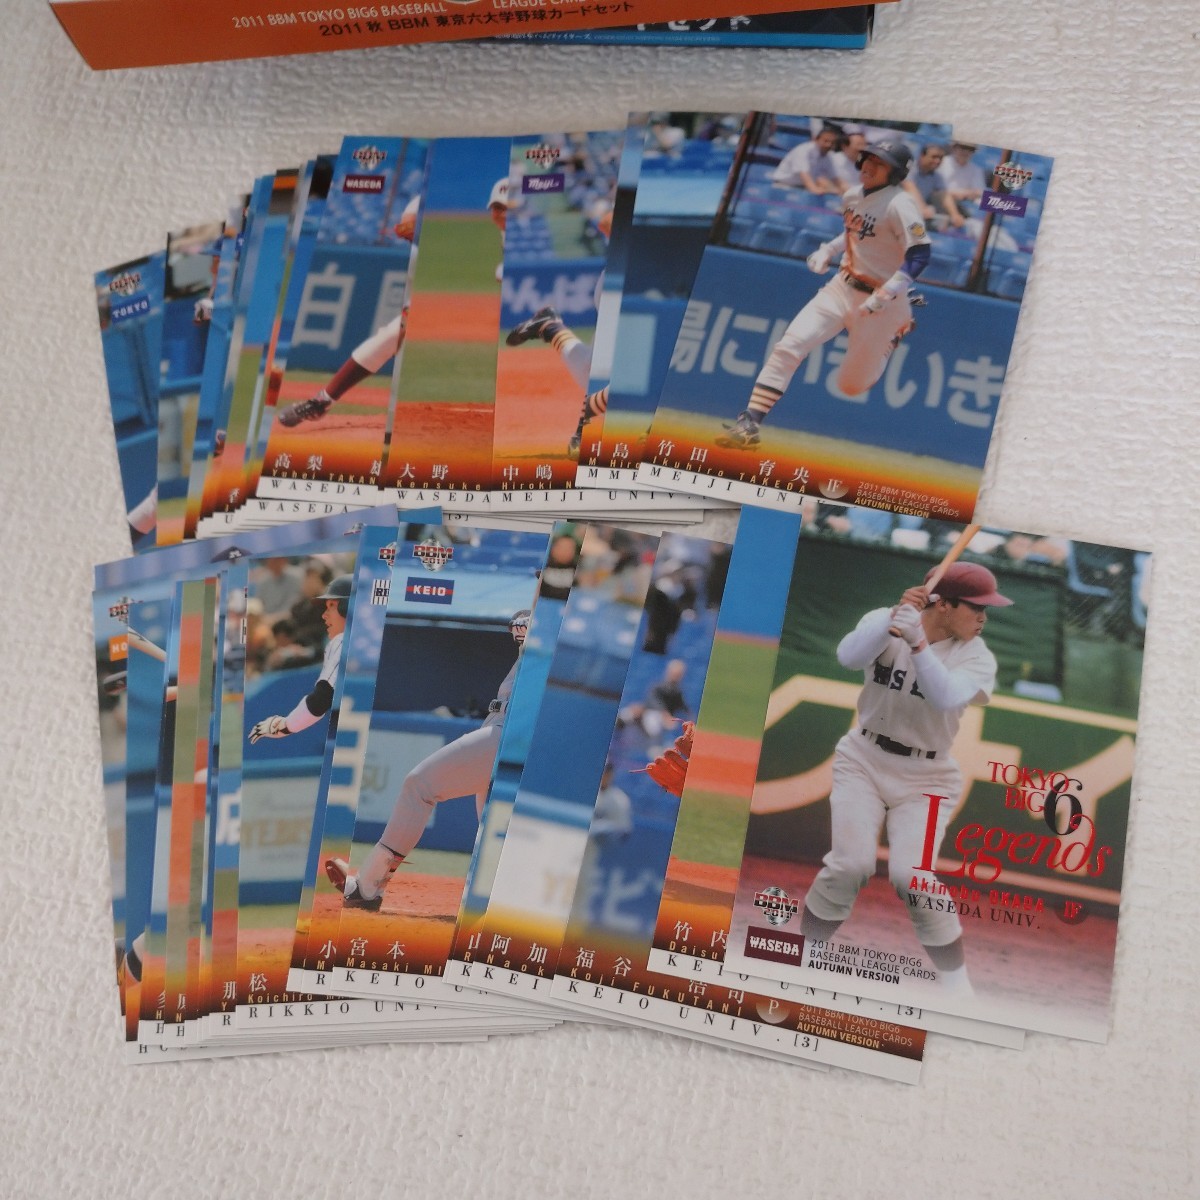 a11 野球カード ベースボールカード ダイアモンドエイジ 1989 2012 東京6大学野球カードセット コナミ日本シリーズ2012カードセット _画像4